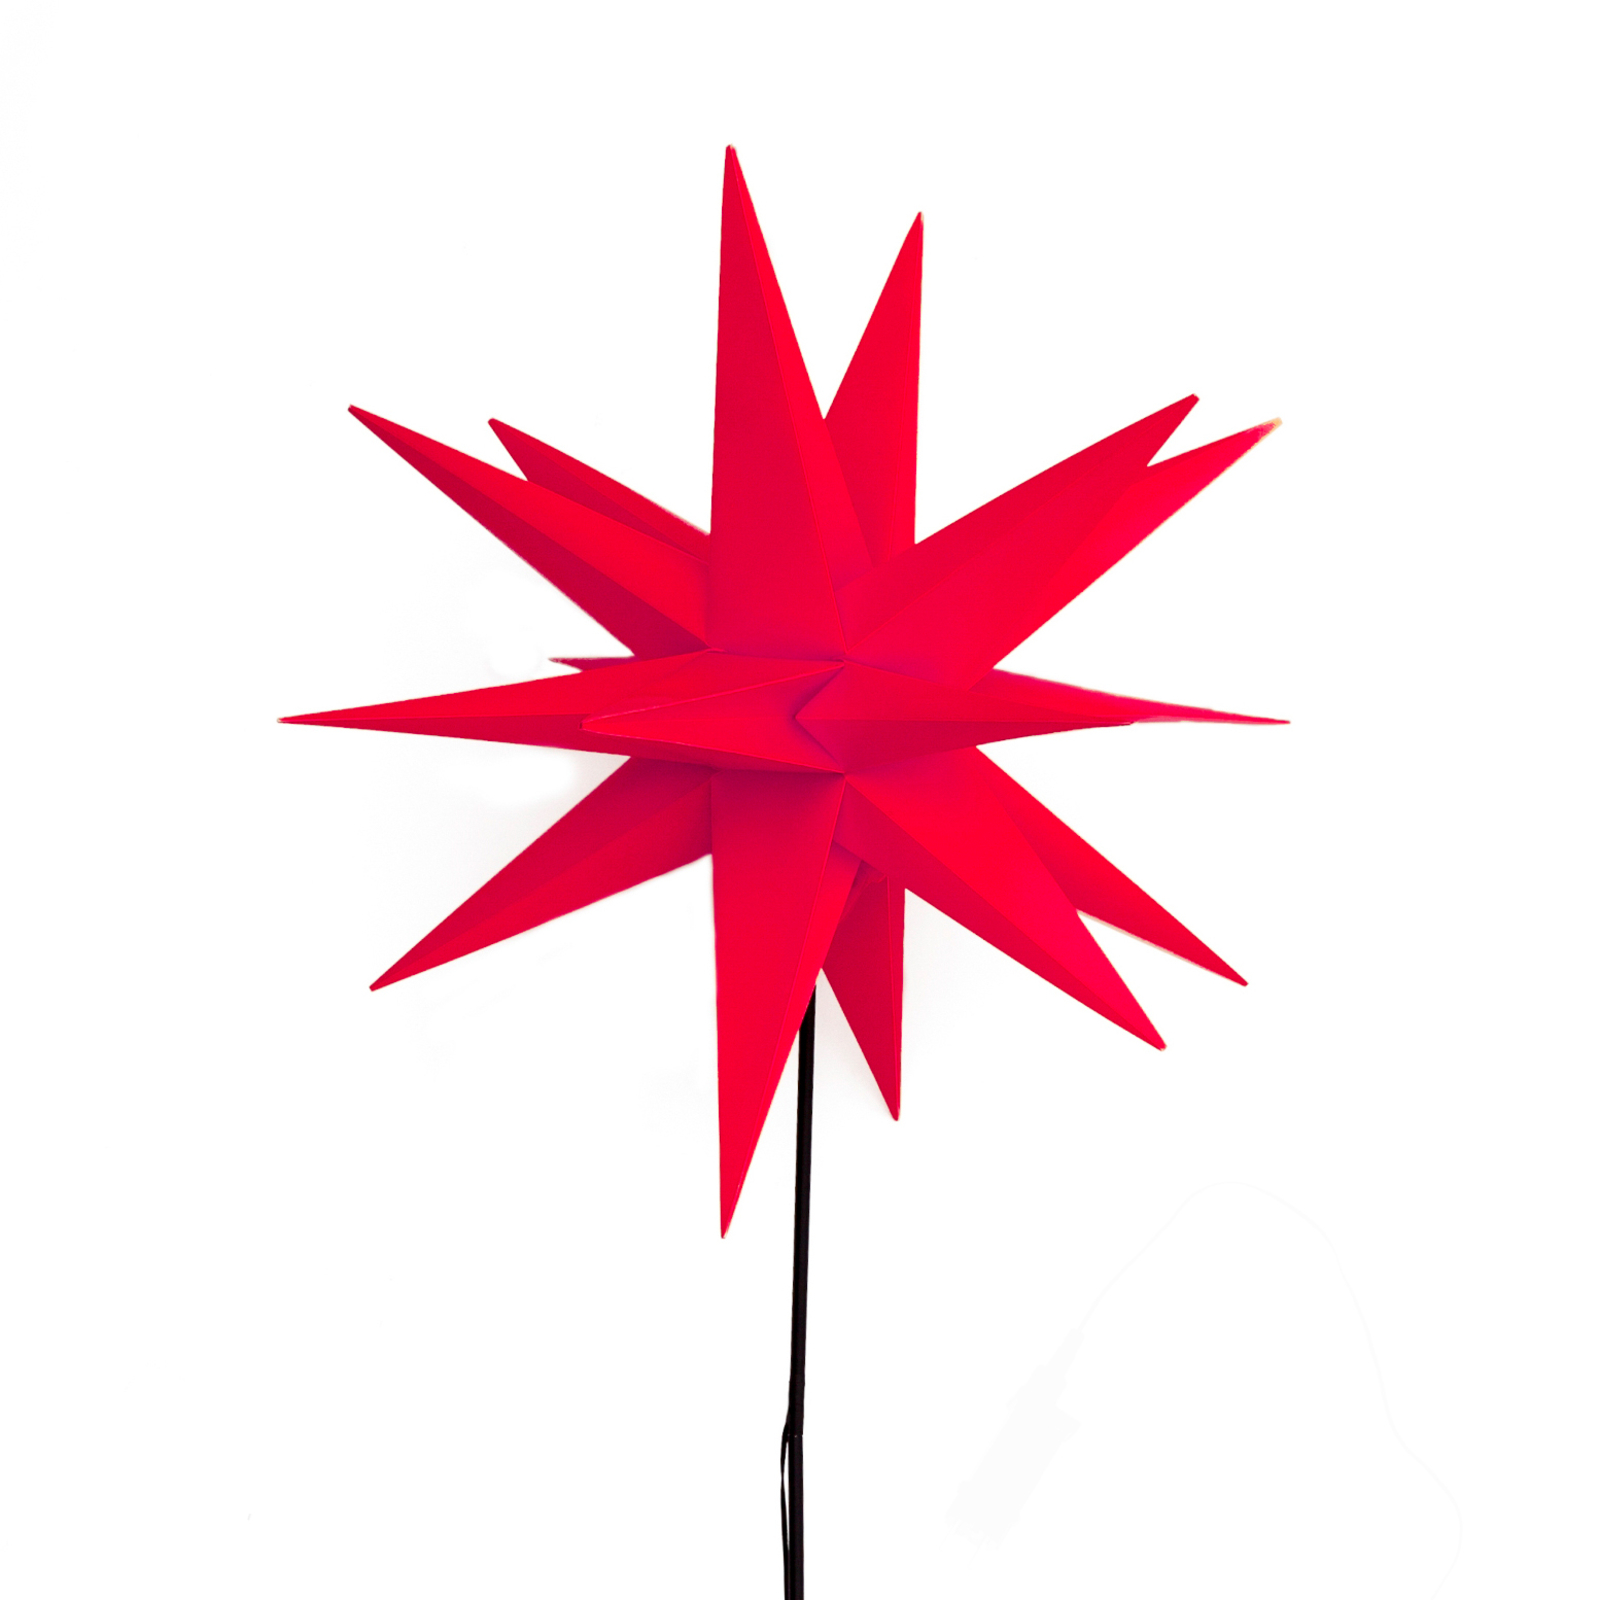 Lauko LED žvaigždė su įžeminimo smaile, Ø 55 cm, raudona